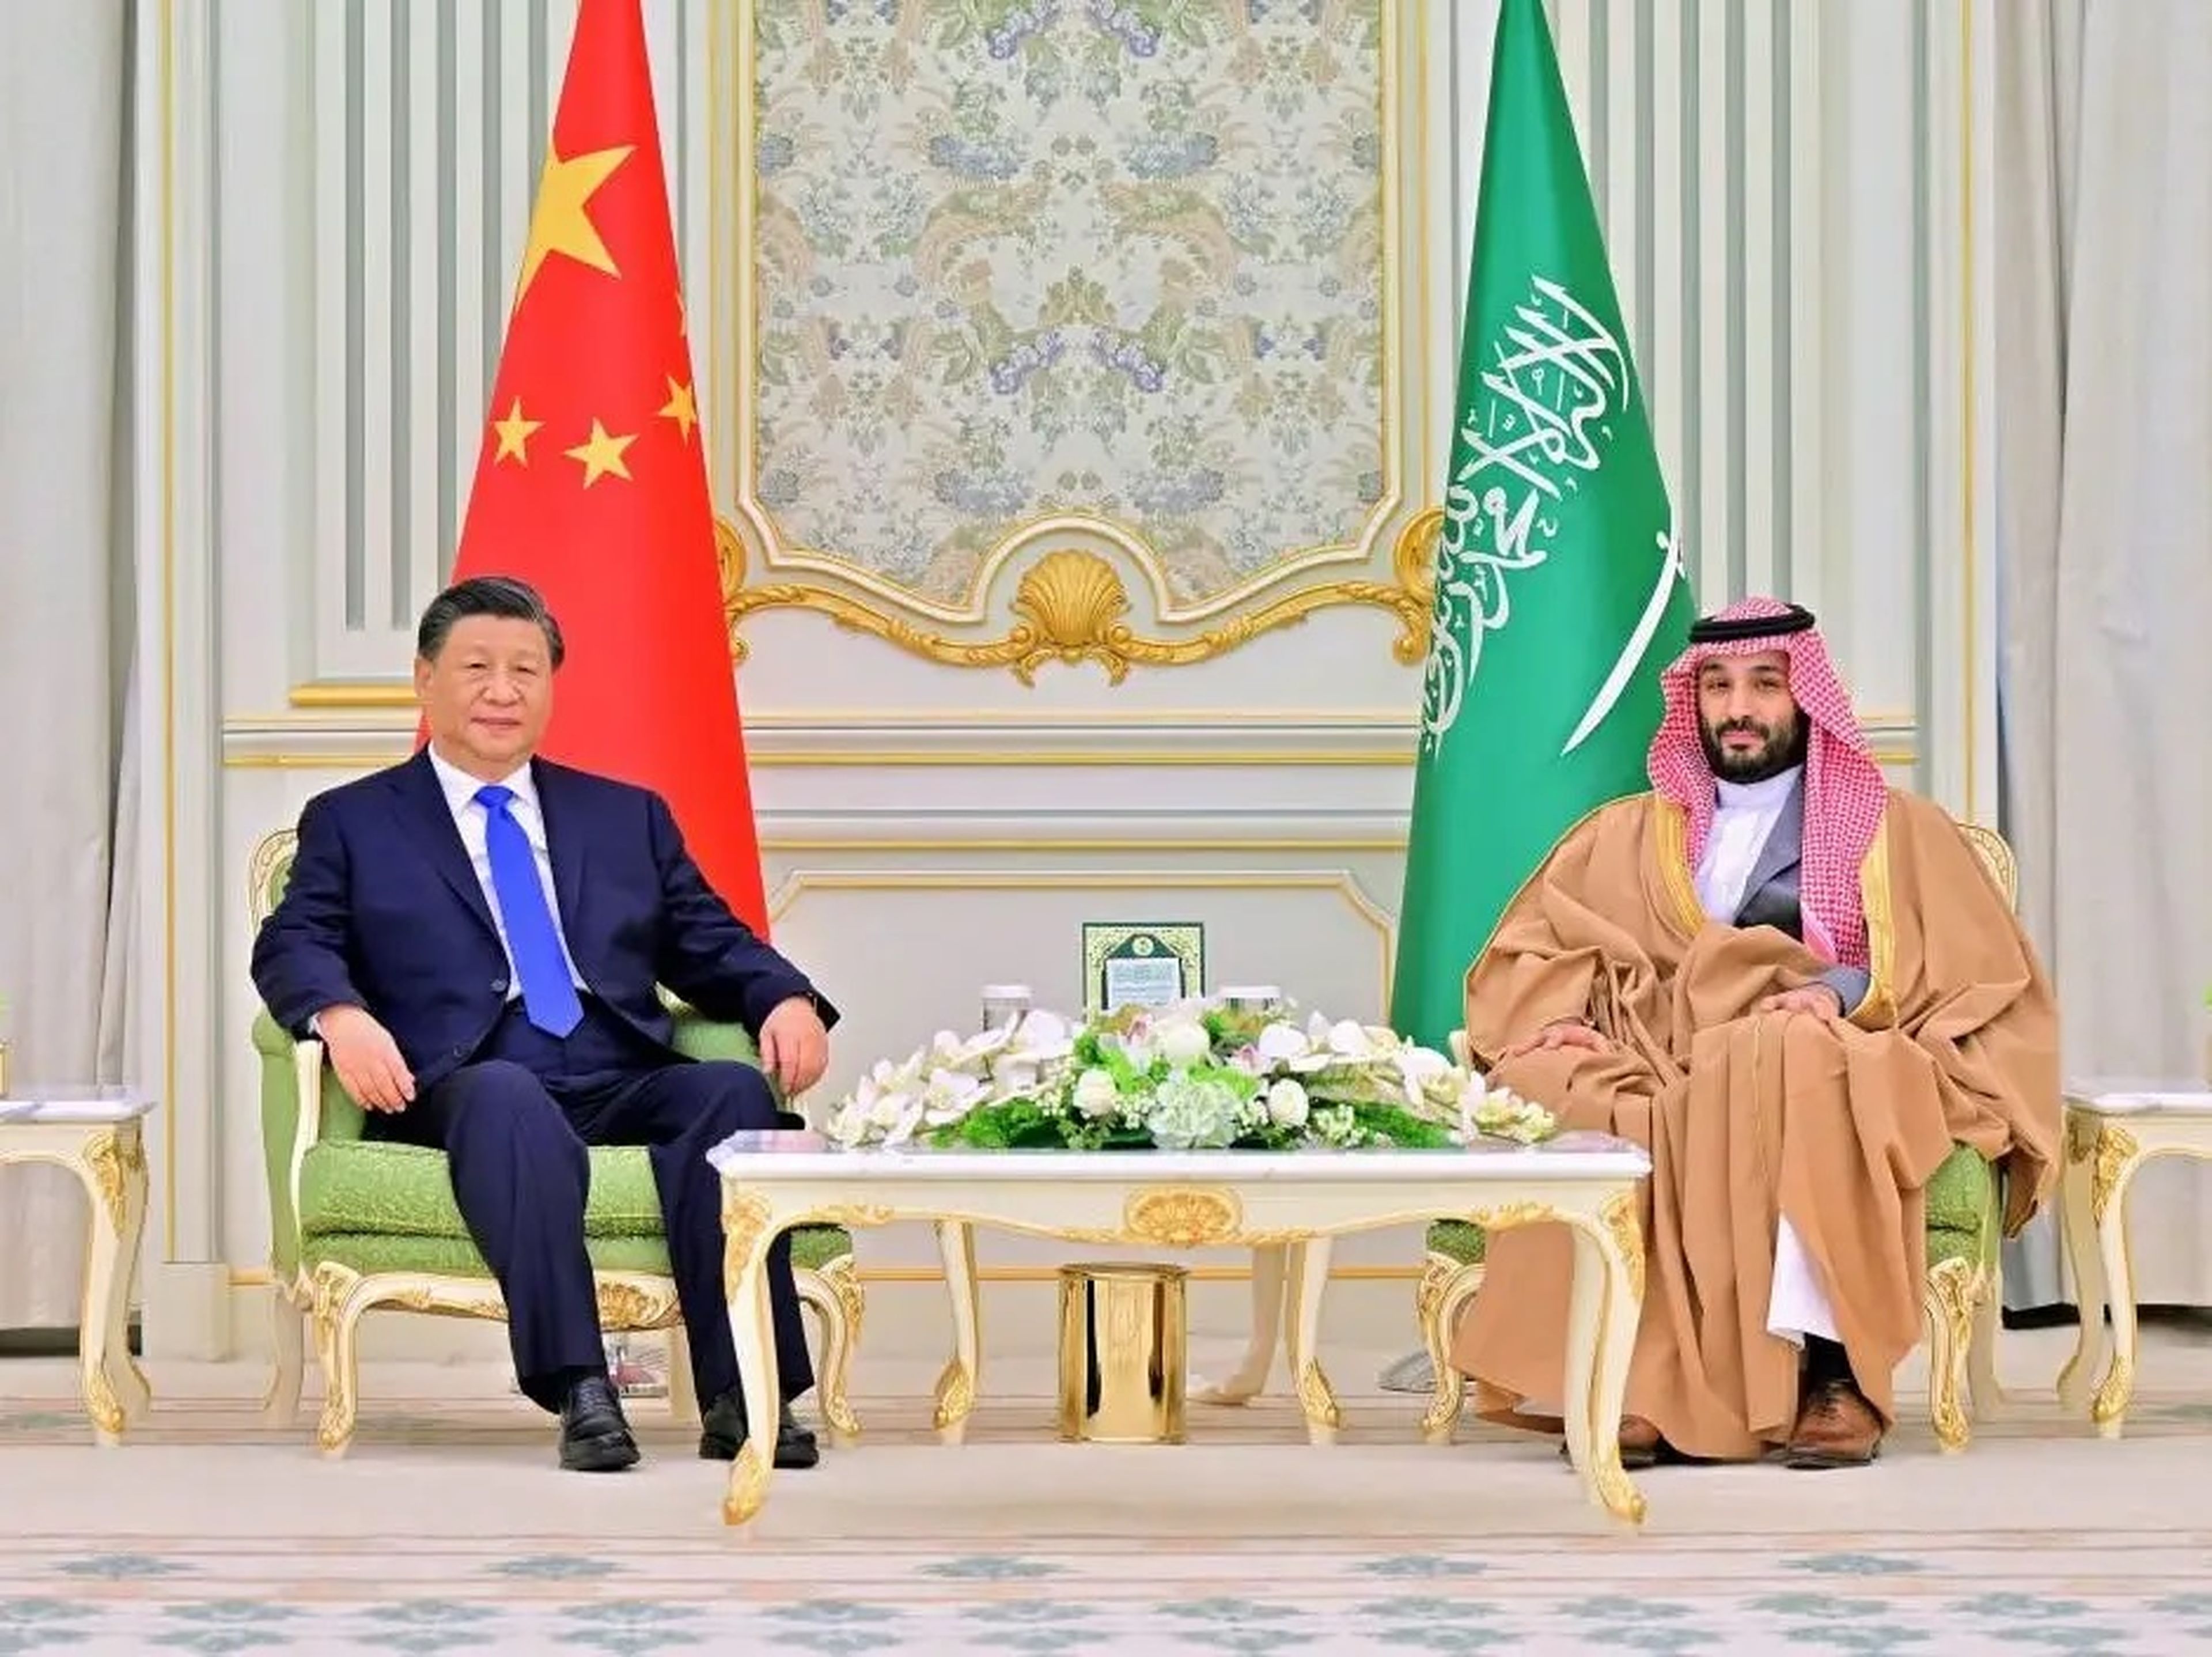 El líder chino Xi Jinping conversando con el príncipe heredero saudí Mohammed bin Salman en el palacio real de Riad, Arabia Saudí, el 8 de diciembre de 2022.